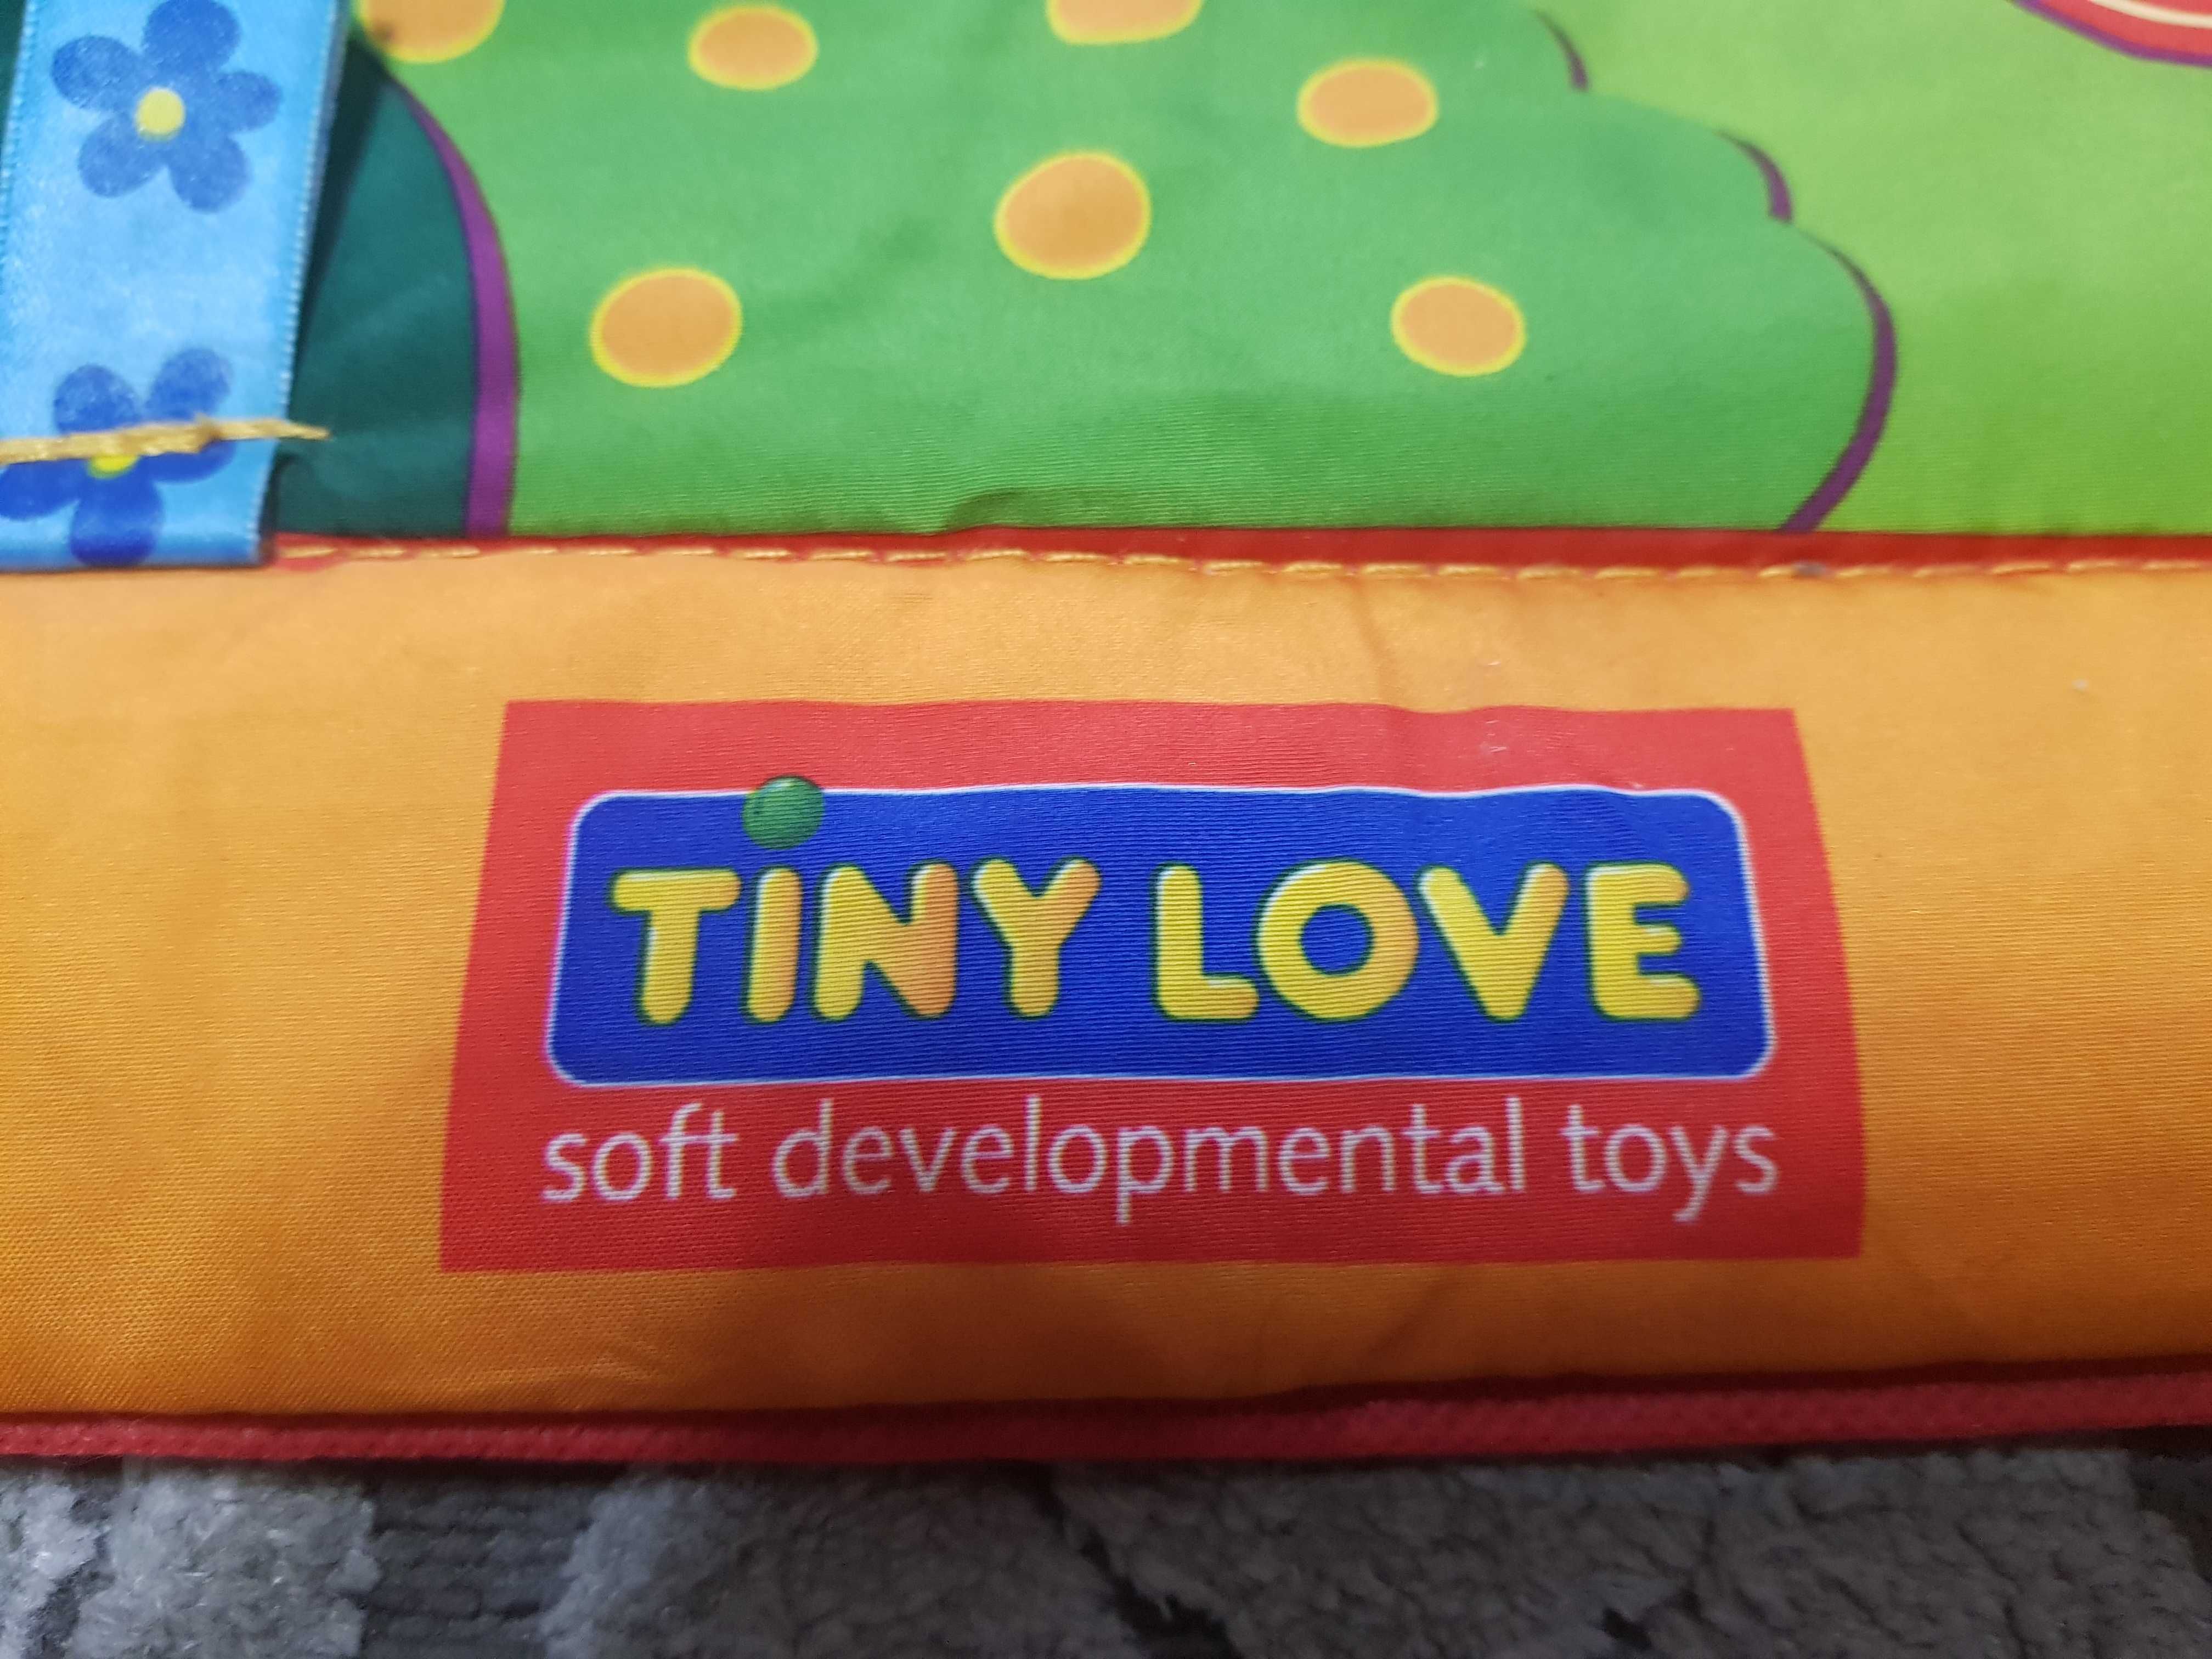 Развивающий коврик Tiny Love